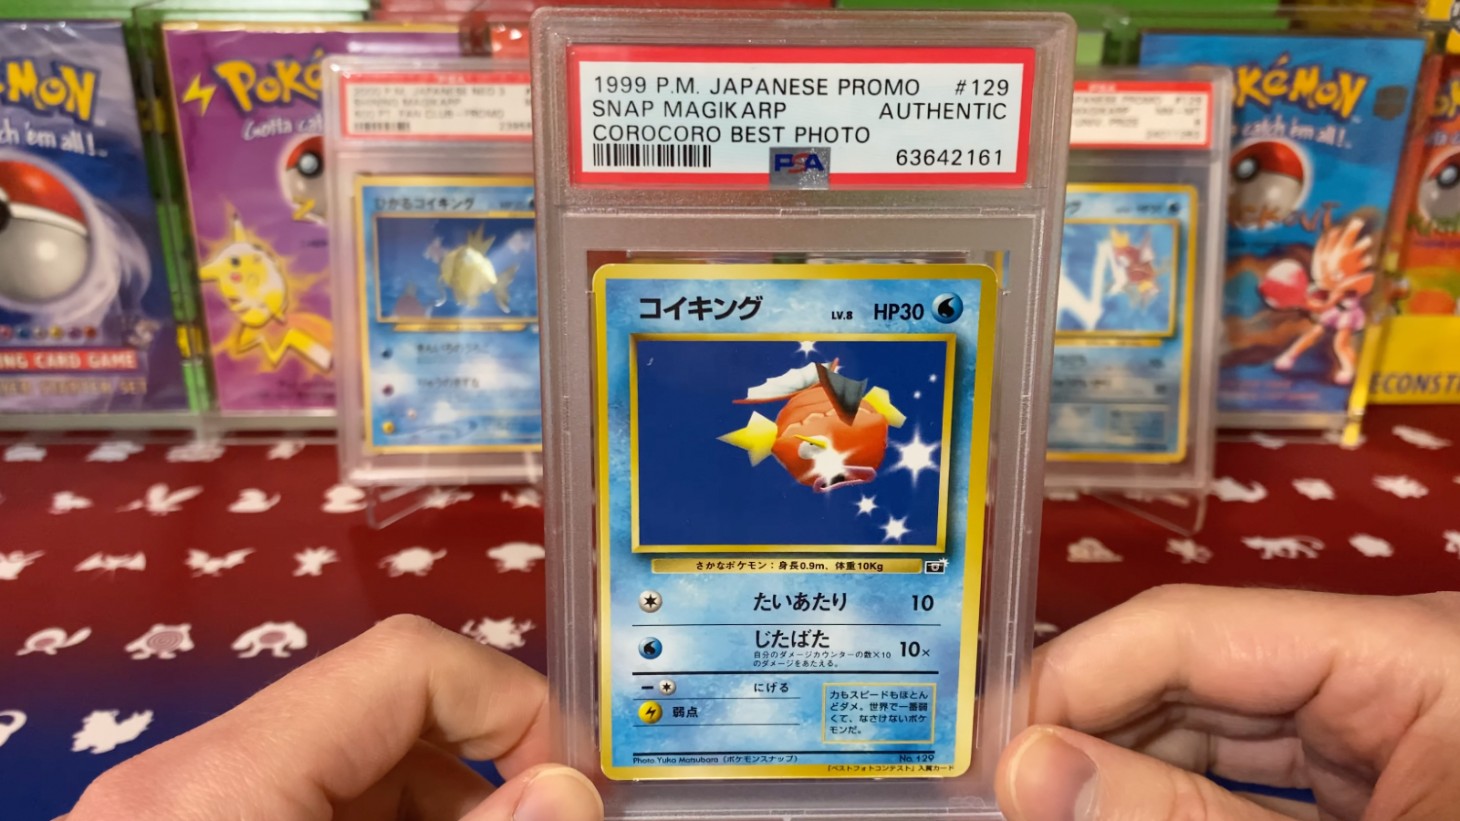 rarest pokemon card ever made